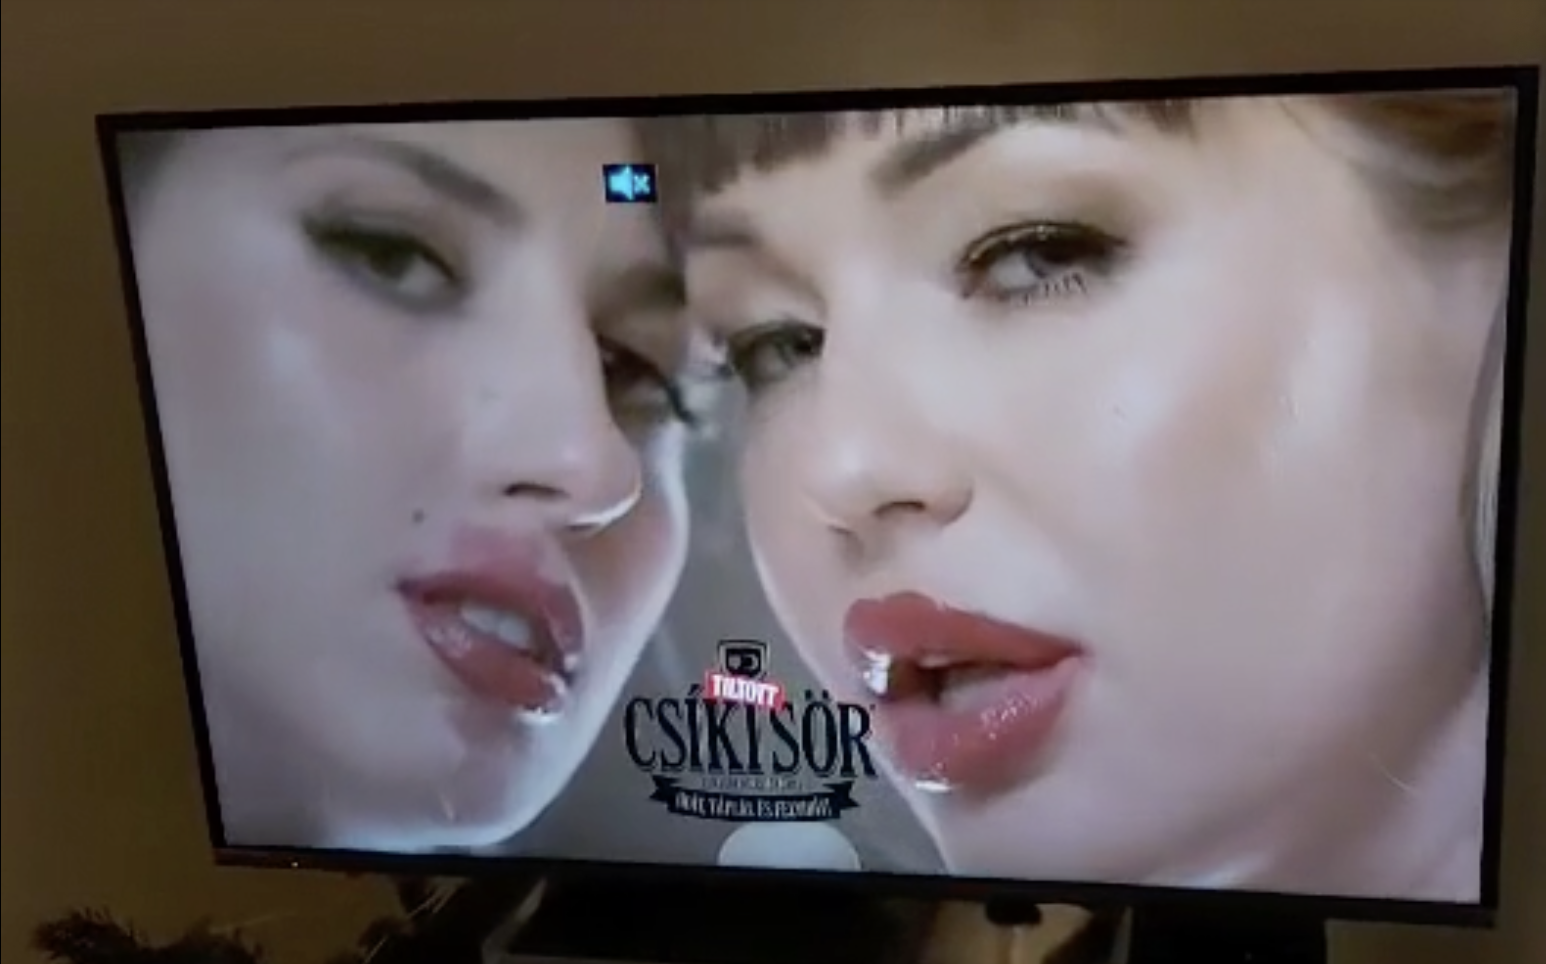 Csíki sört nyalogatnak lányok az egyik szexcsatornán egy reklámban, a Csíki Sör Manufaktúra tagadja, hogy övék a reklám